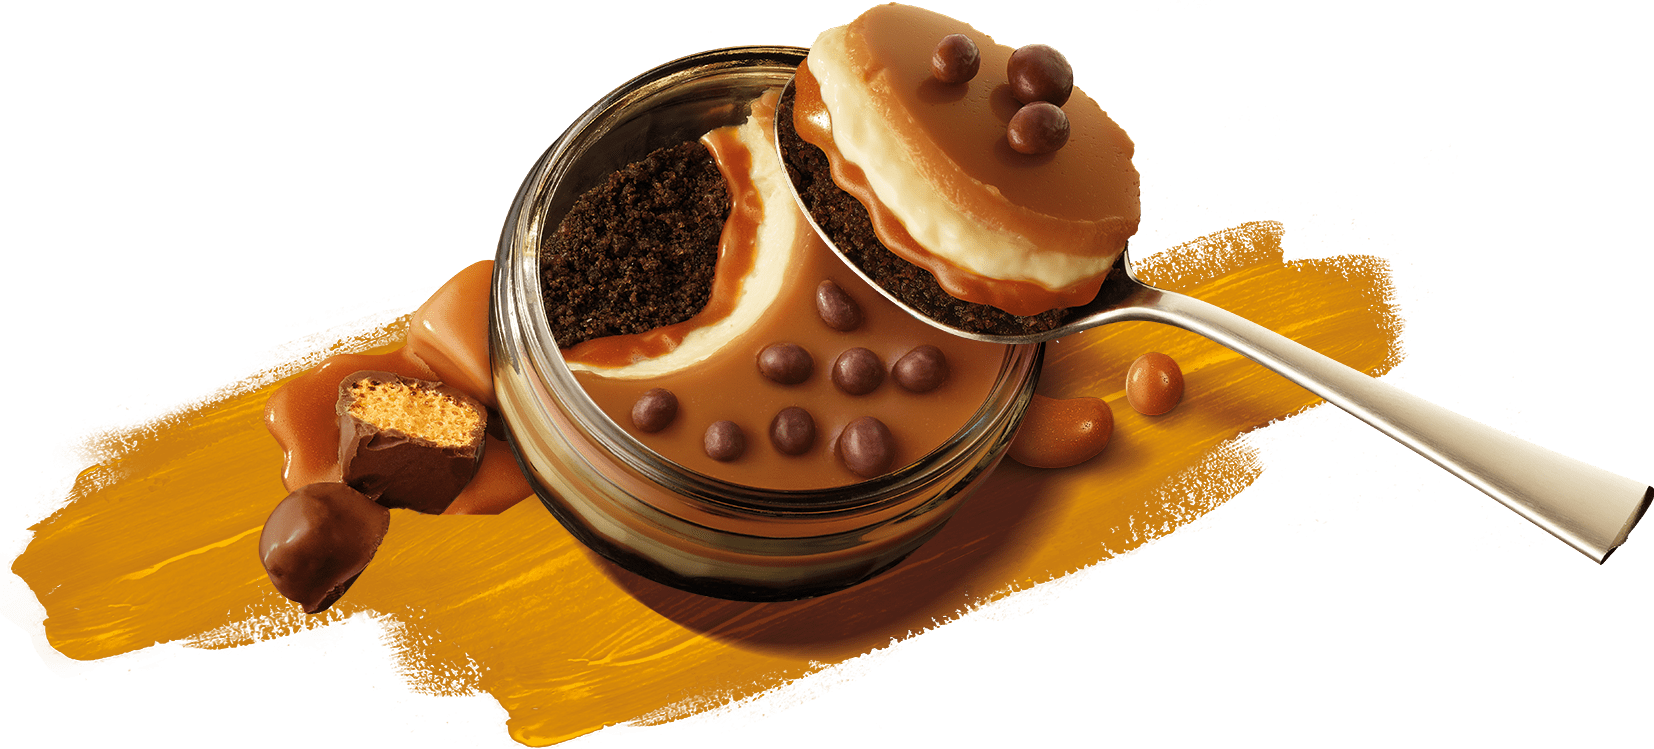 Chocolate & Honeycomb